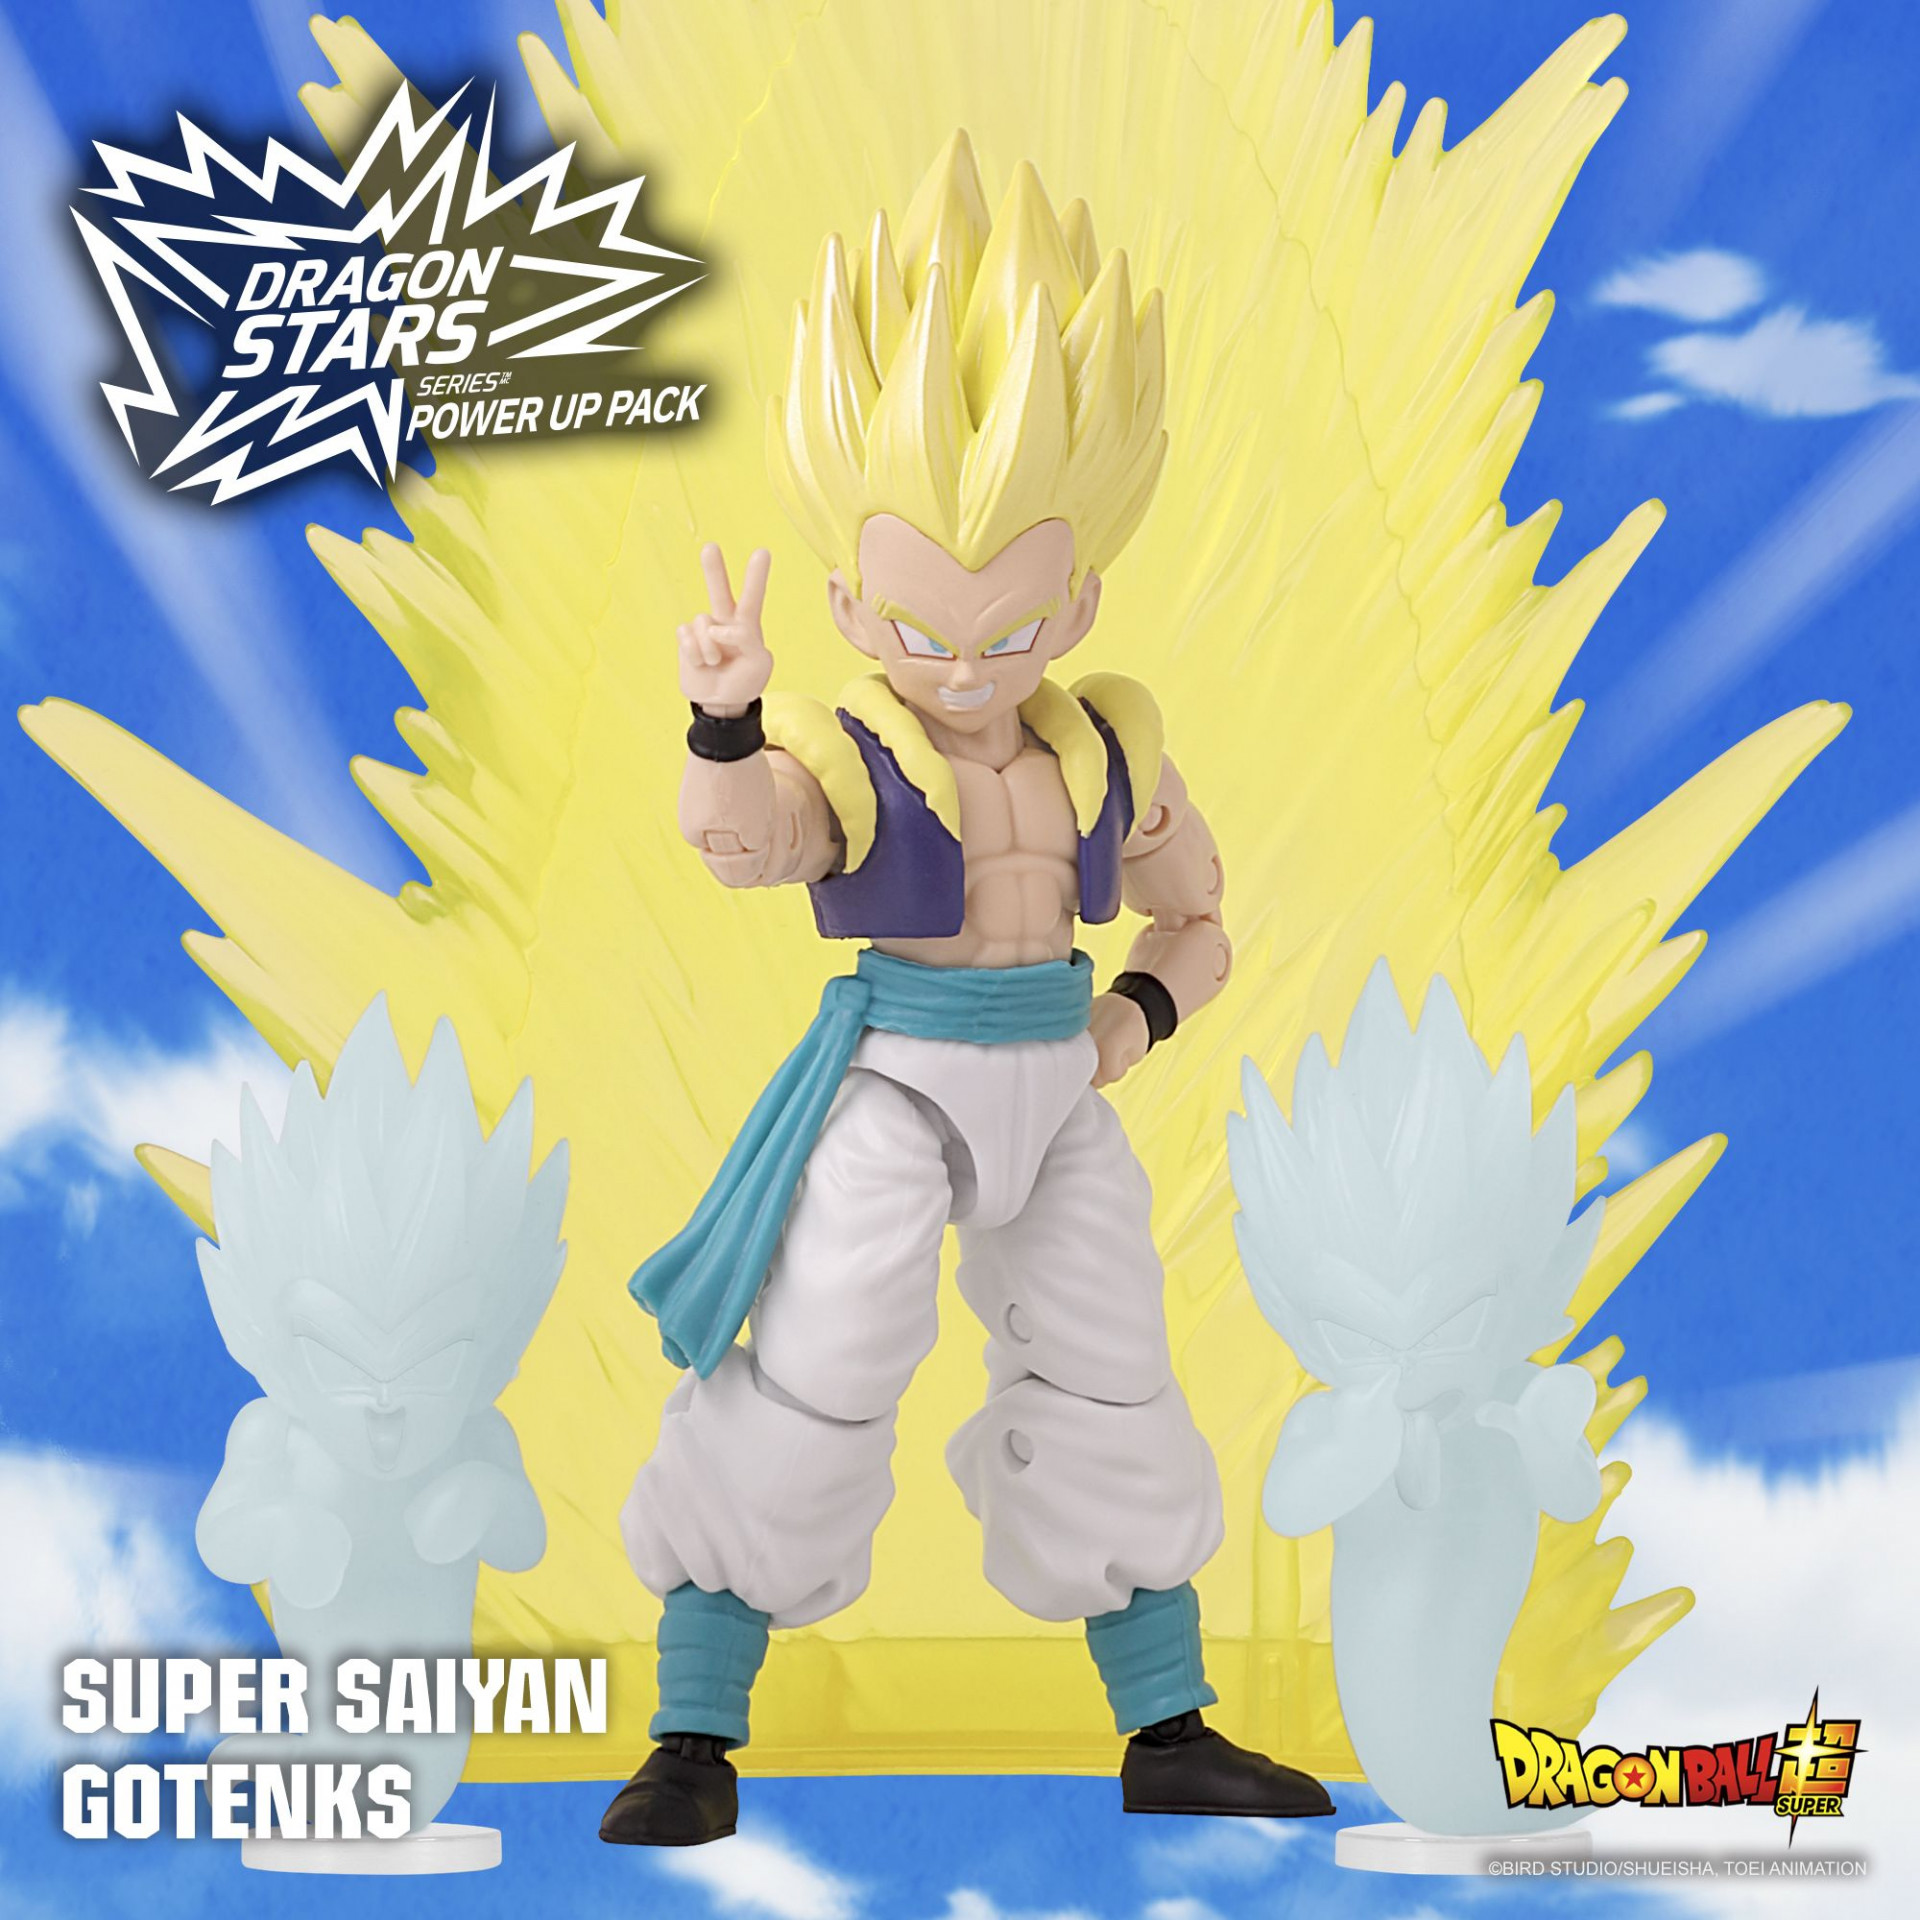 Super Saiyan Gotenks kommt zum Power-Up Pack der Dragon Stars Serie!